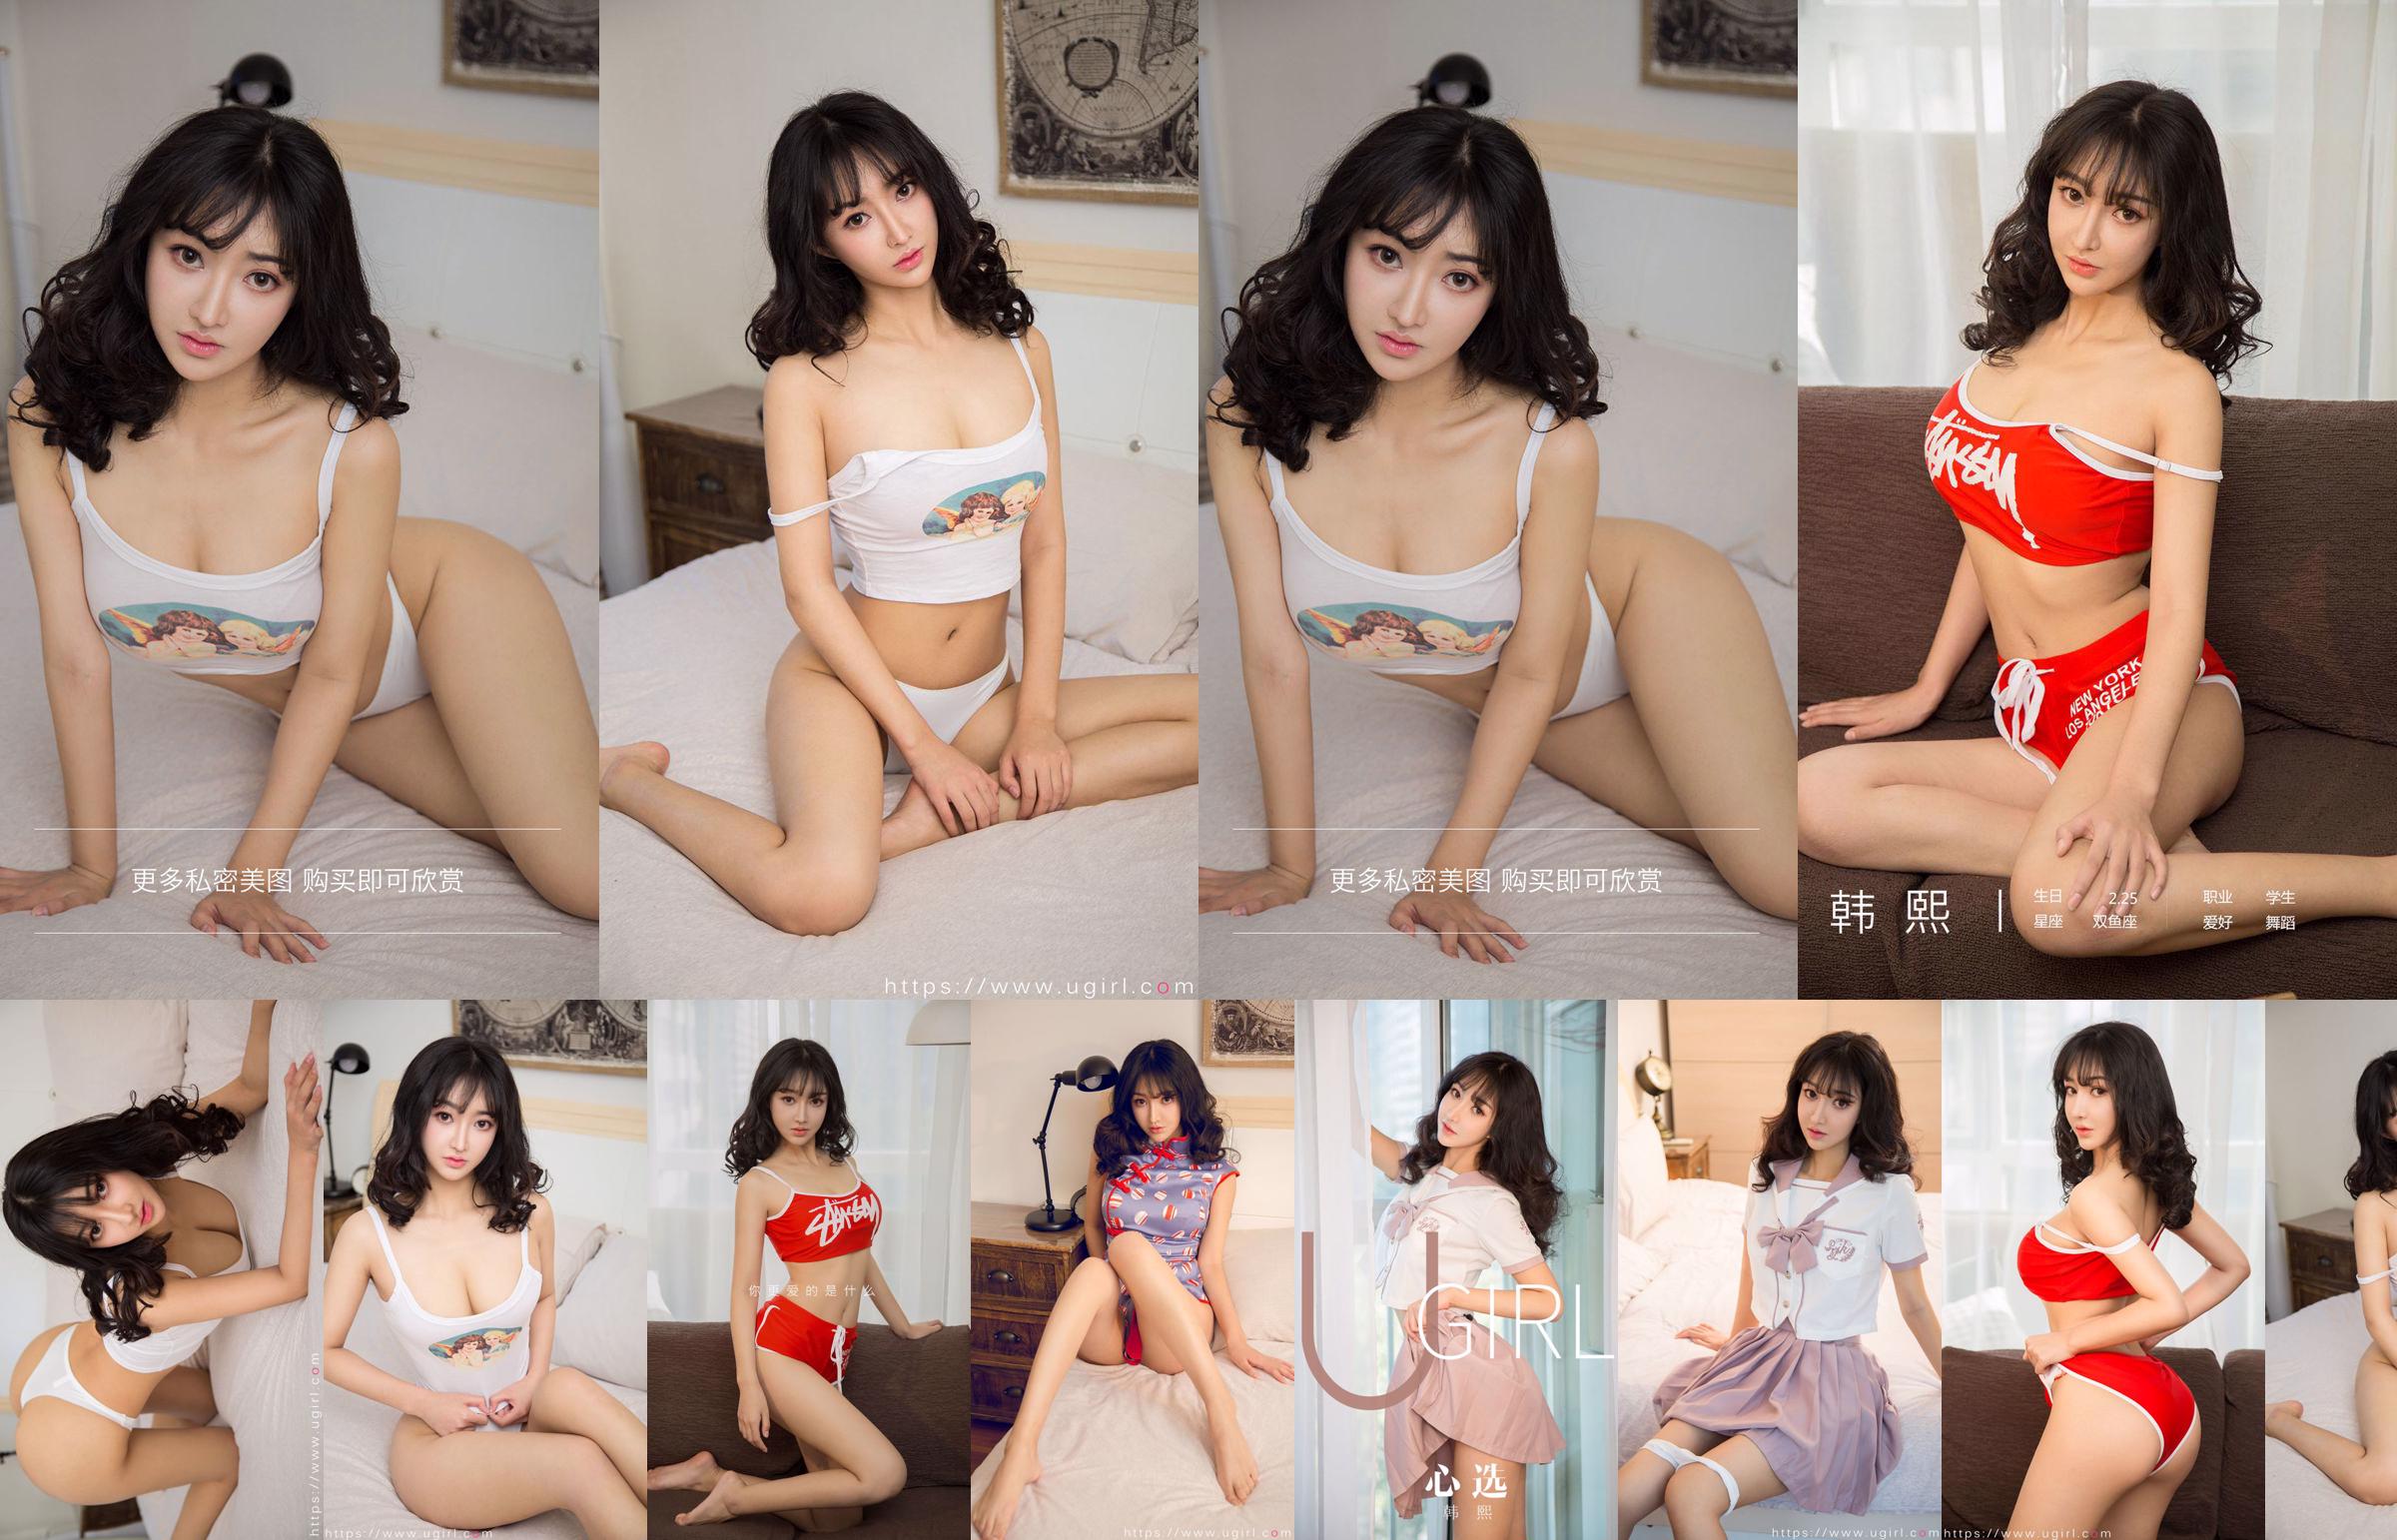 [Home Delivery WordGirls] No.812 Trainee Gadis Cantik Xi Shui Shui No.ca1032 Halaman 1